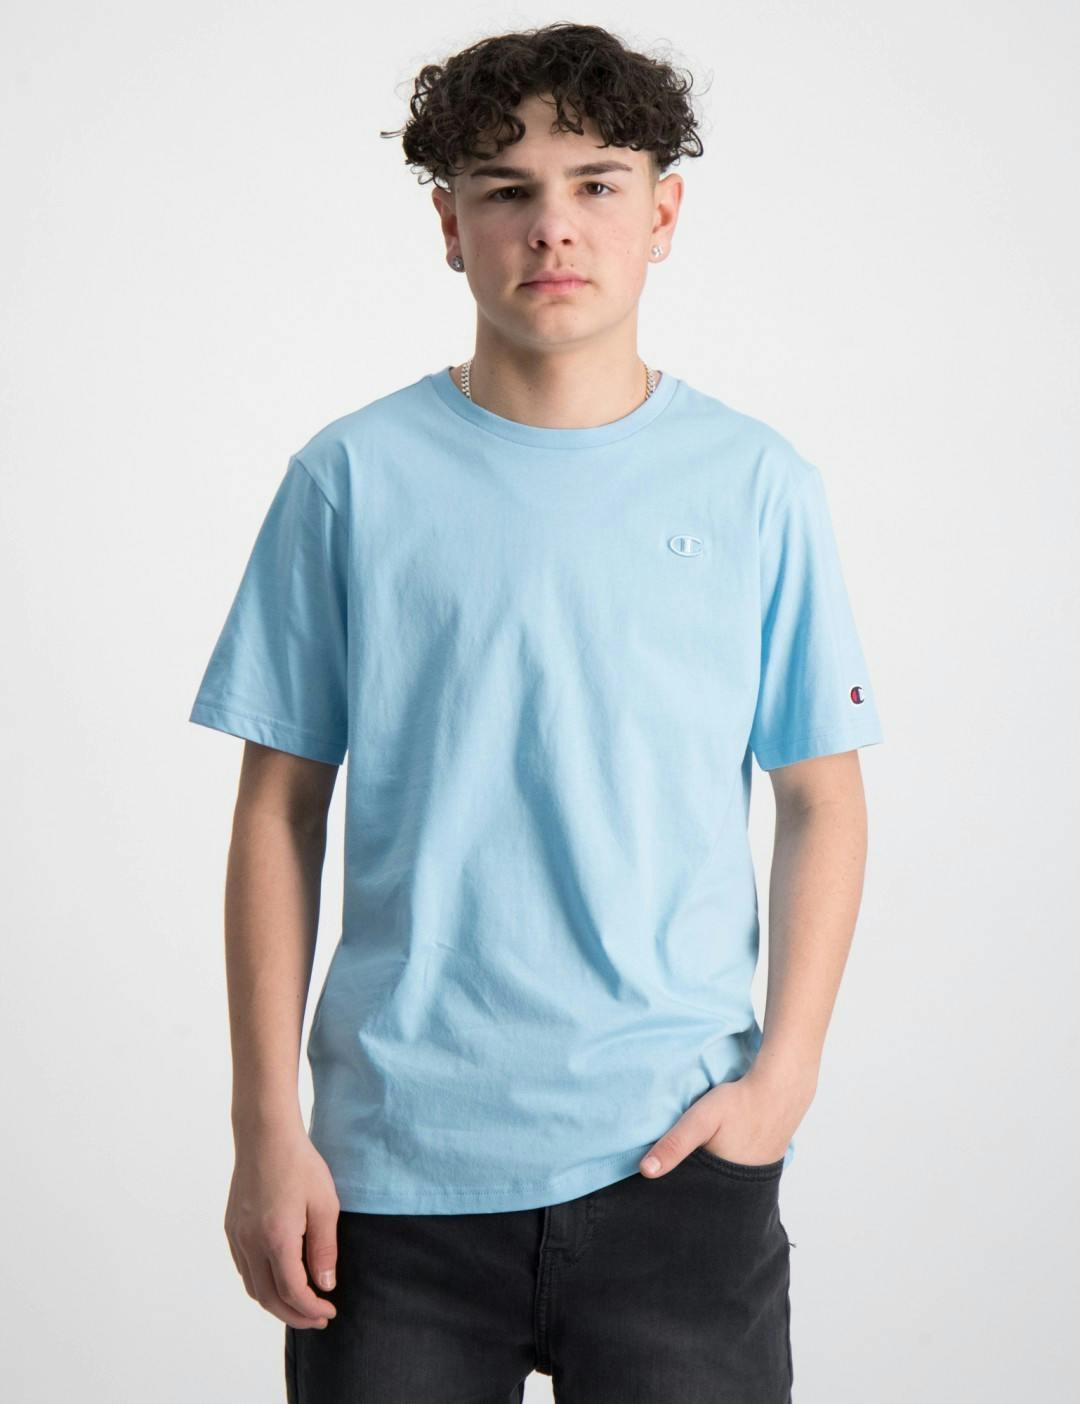 Blau Crewneck T-Shirt für Jungen | Kids Brand Store